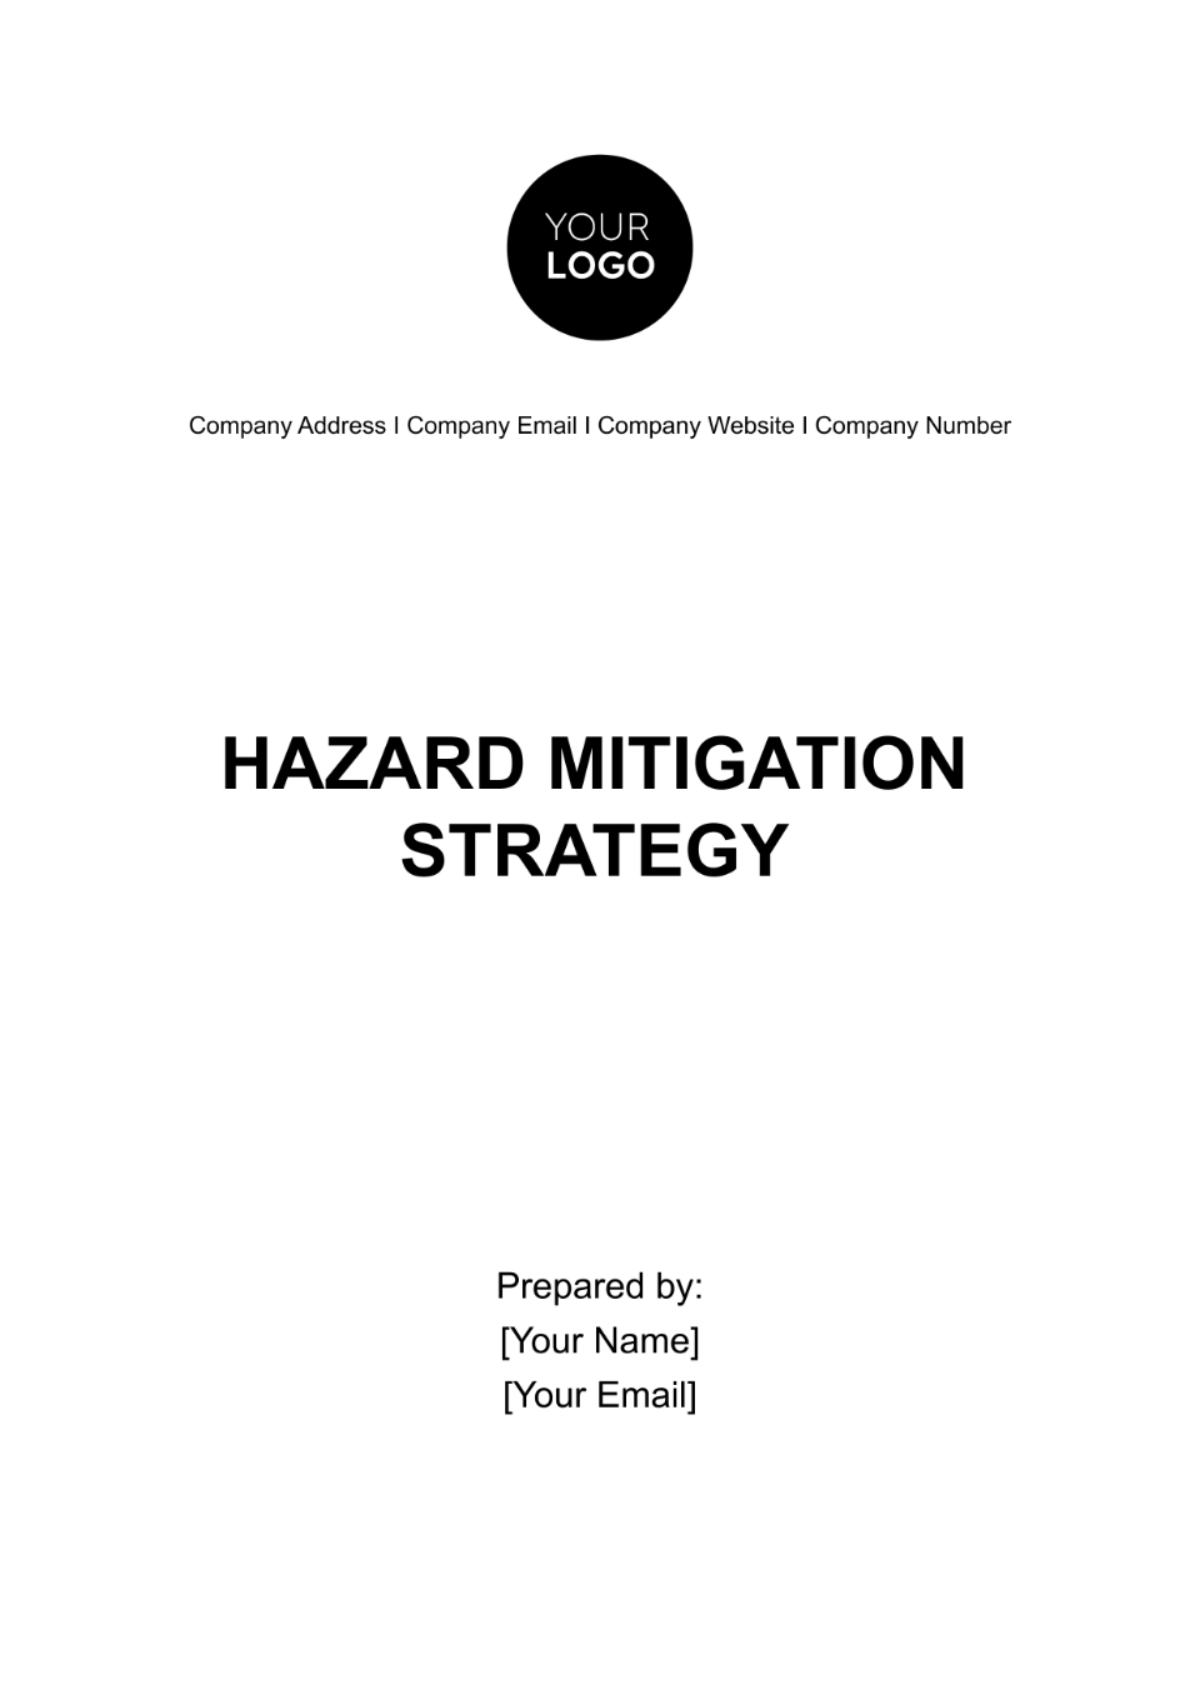 Hazard Mitigation Strategy Template